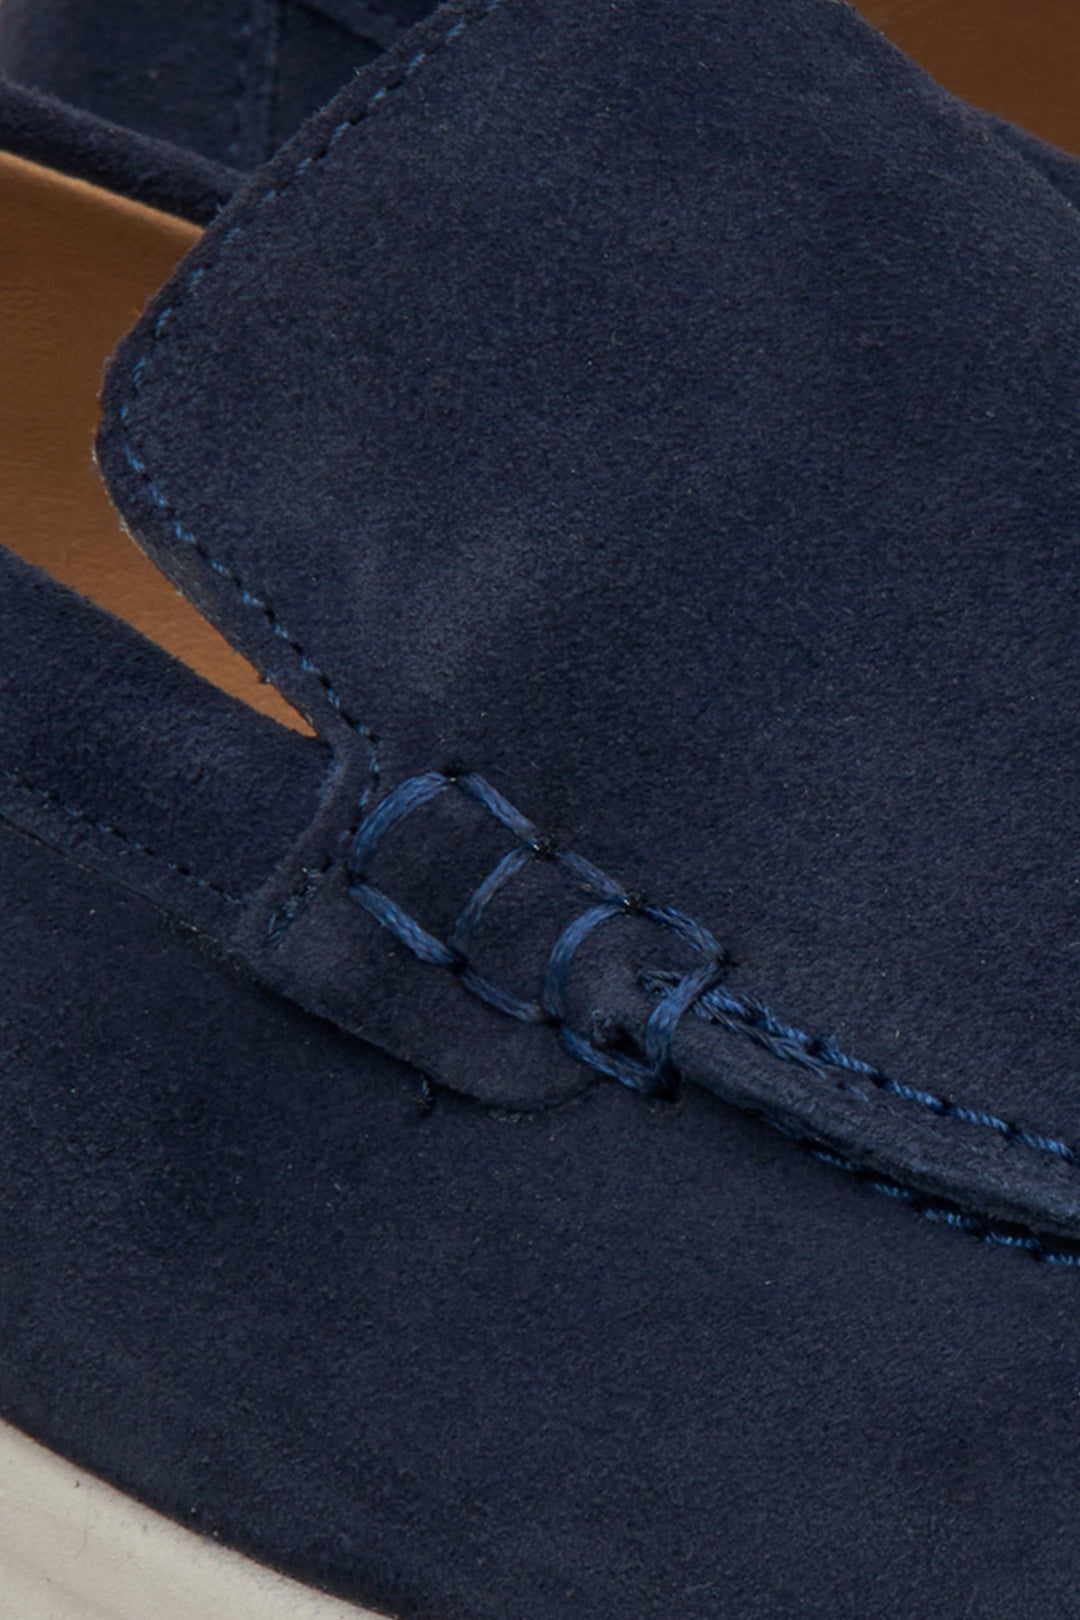 Miękkie, welurowe mokasyny damskie Estro w kolorze granatowym - zbliżenie na detale.